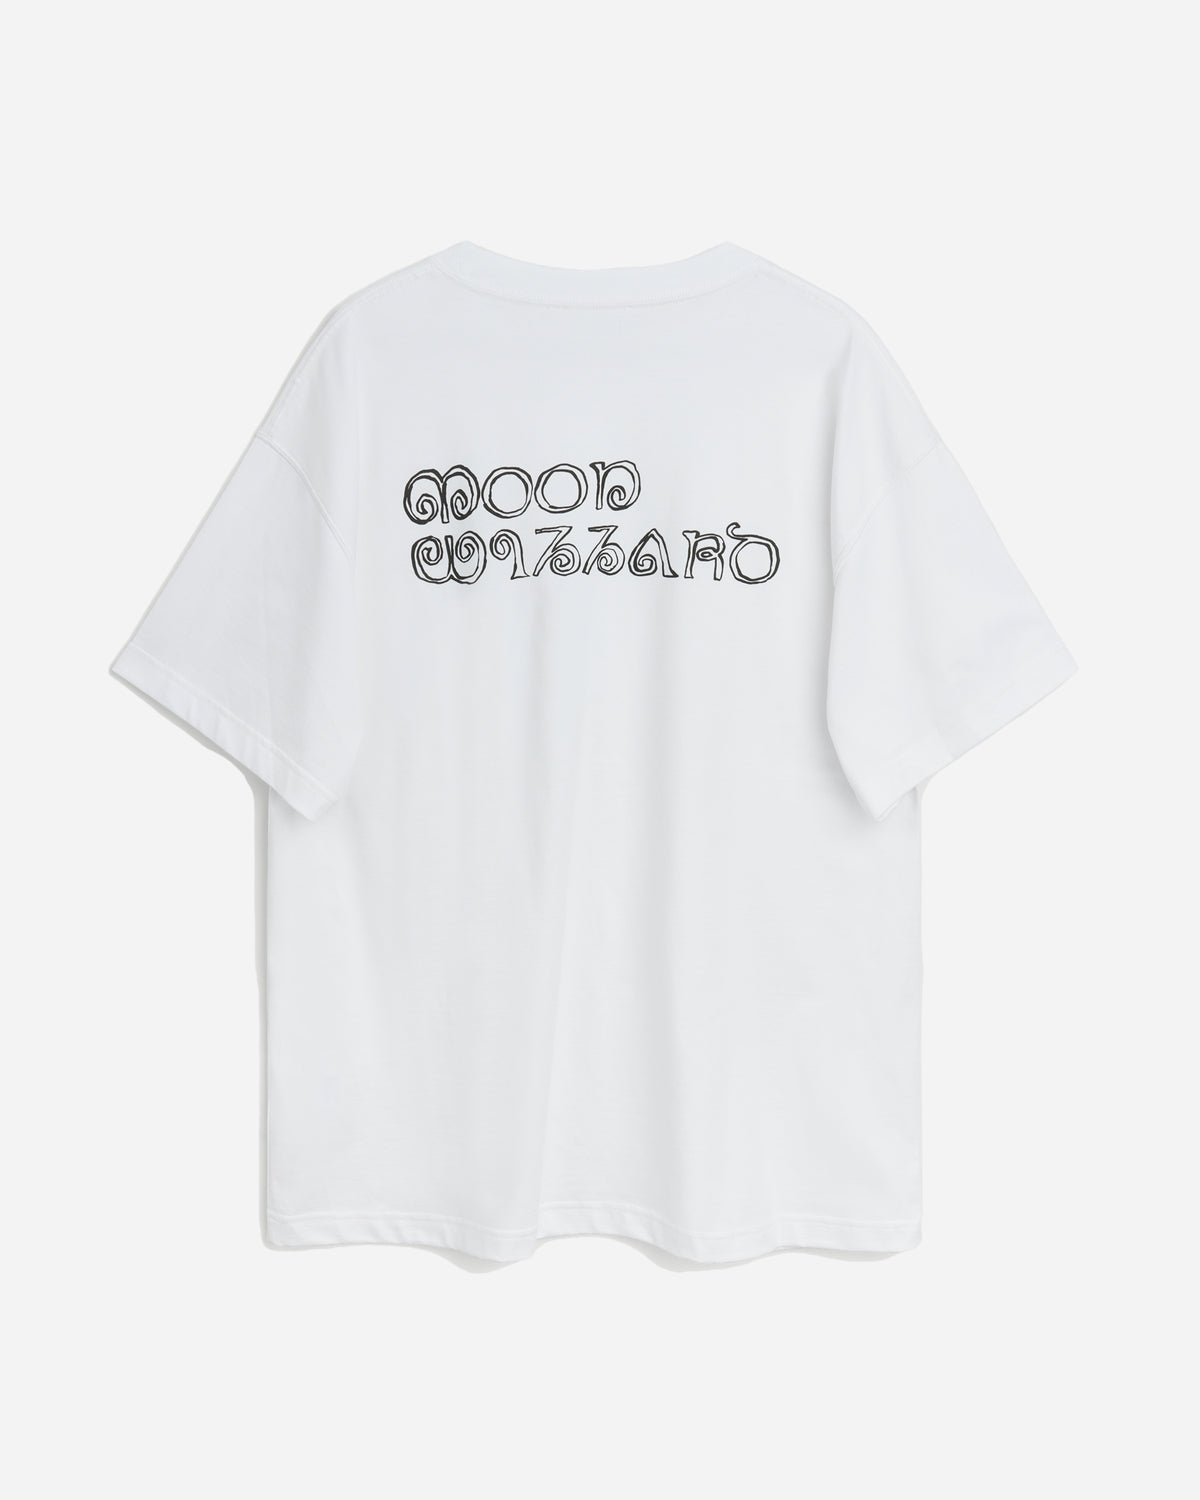 Kai T-shirt Lunar - White